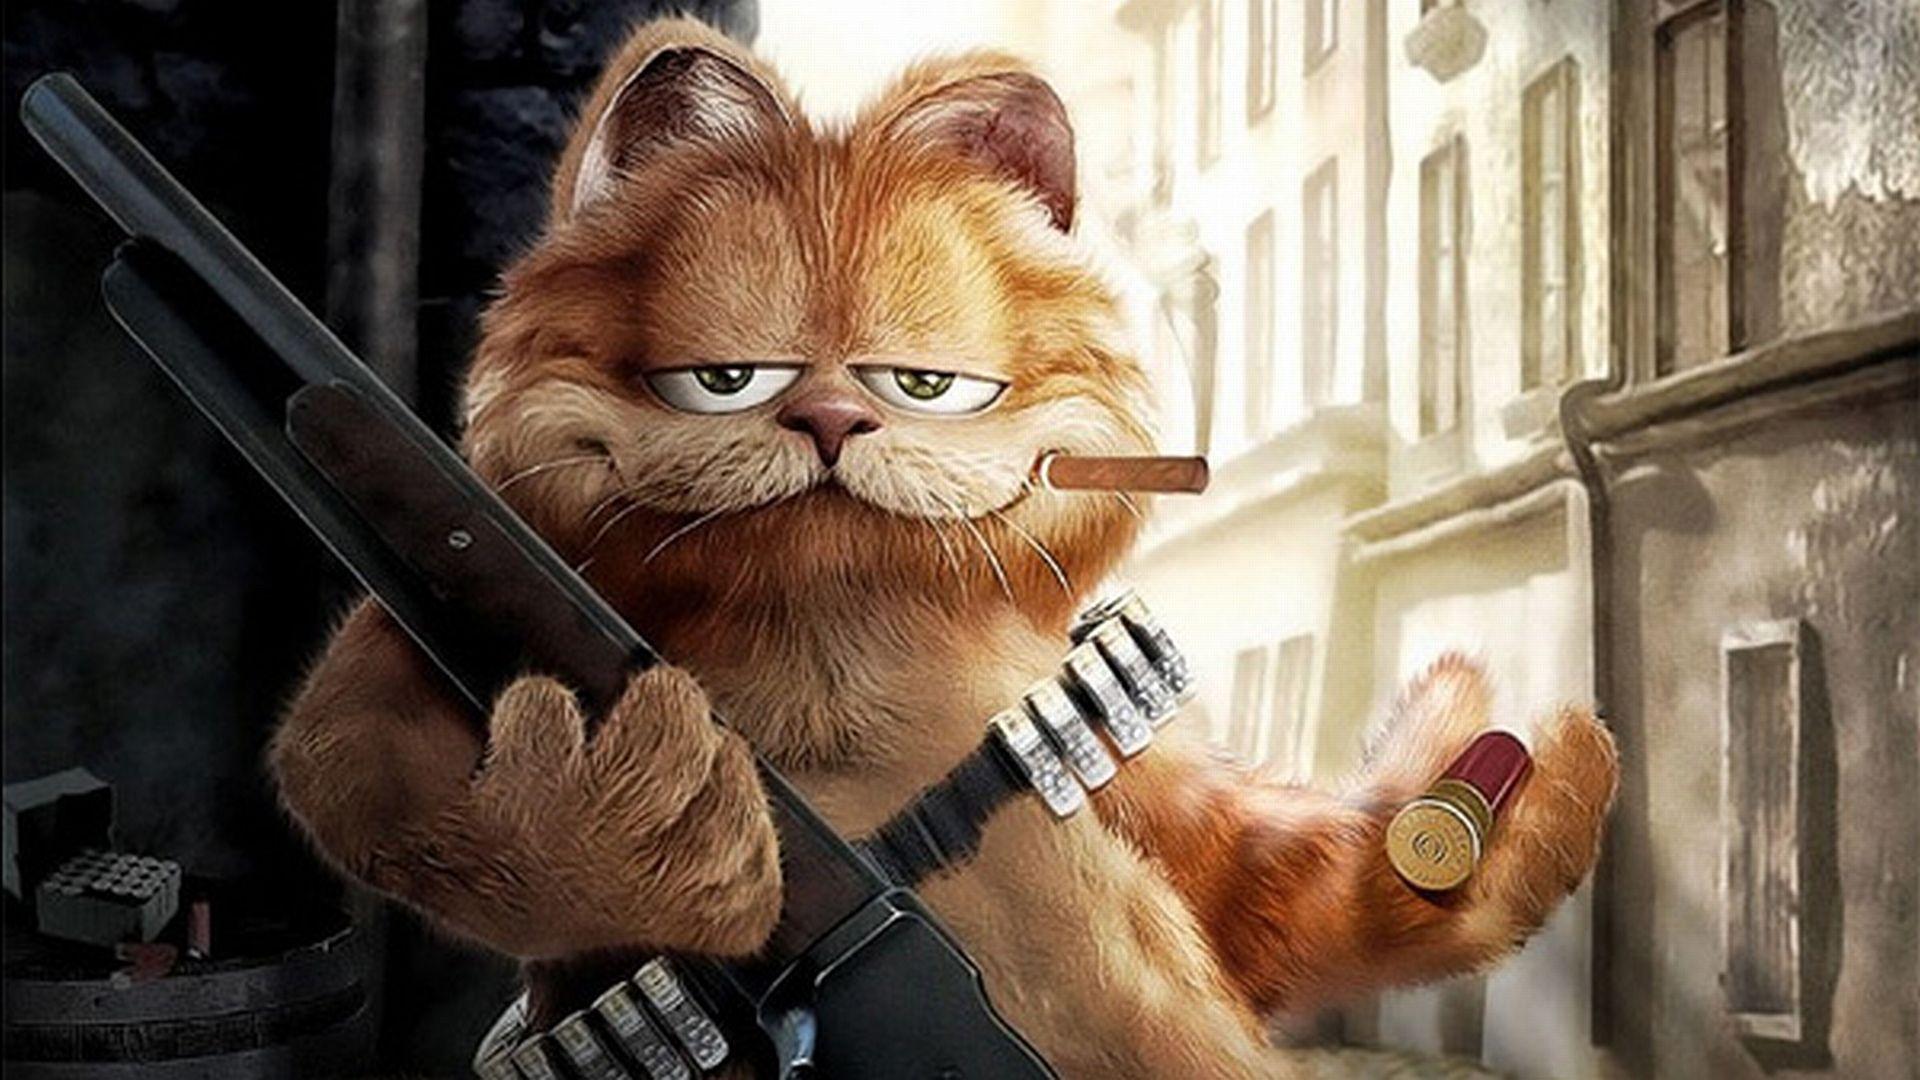 Garfield HD Wallpaper